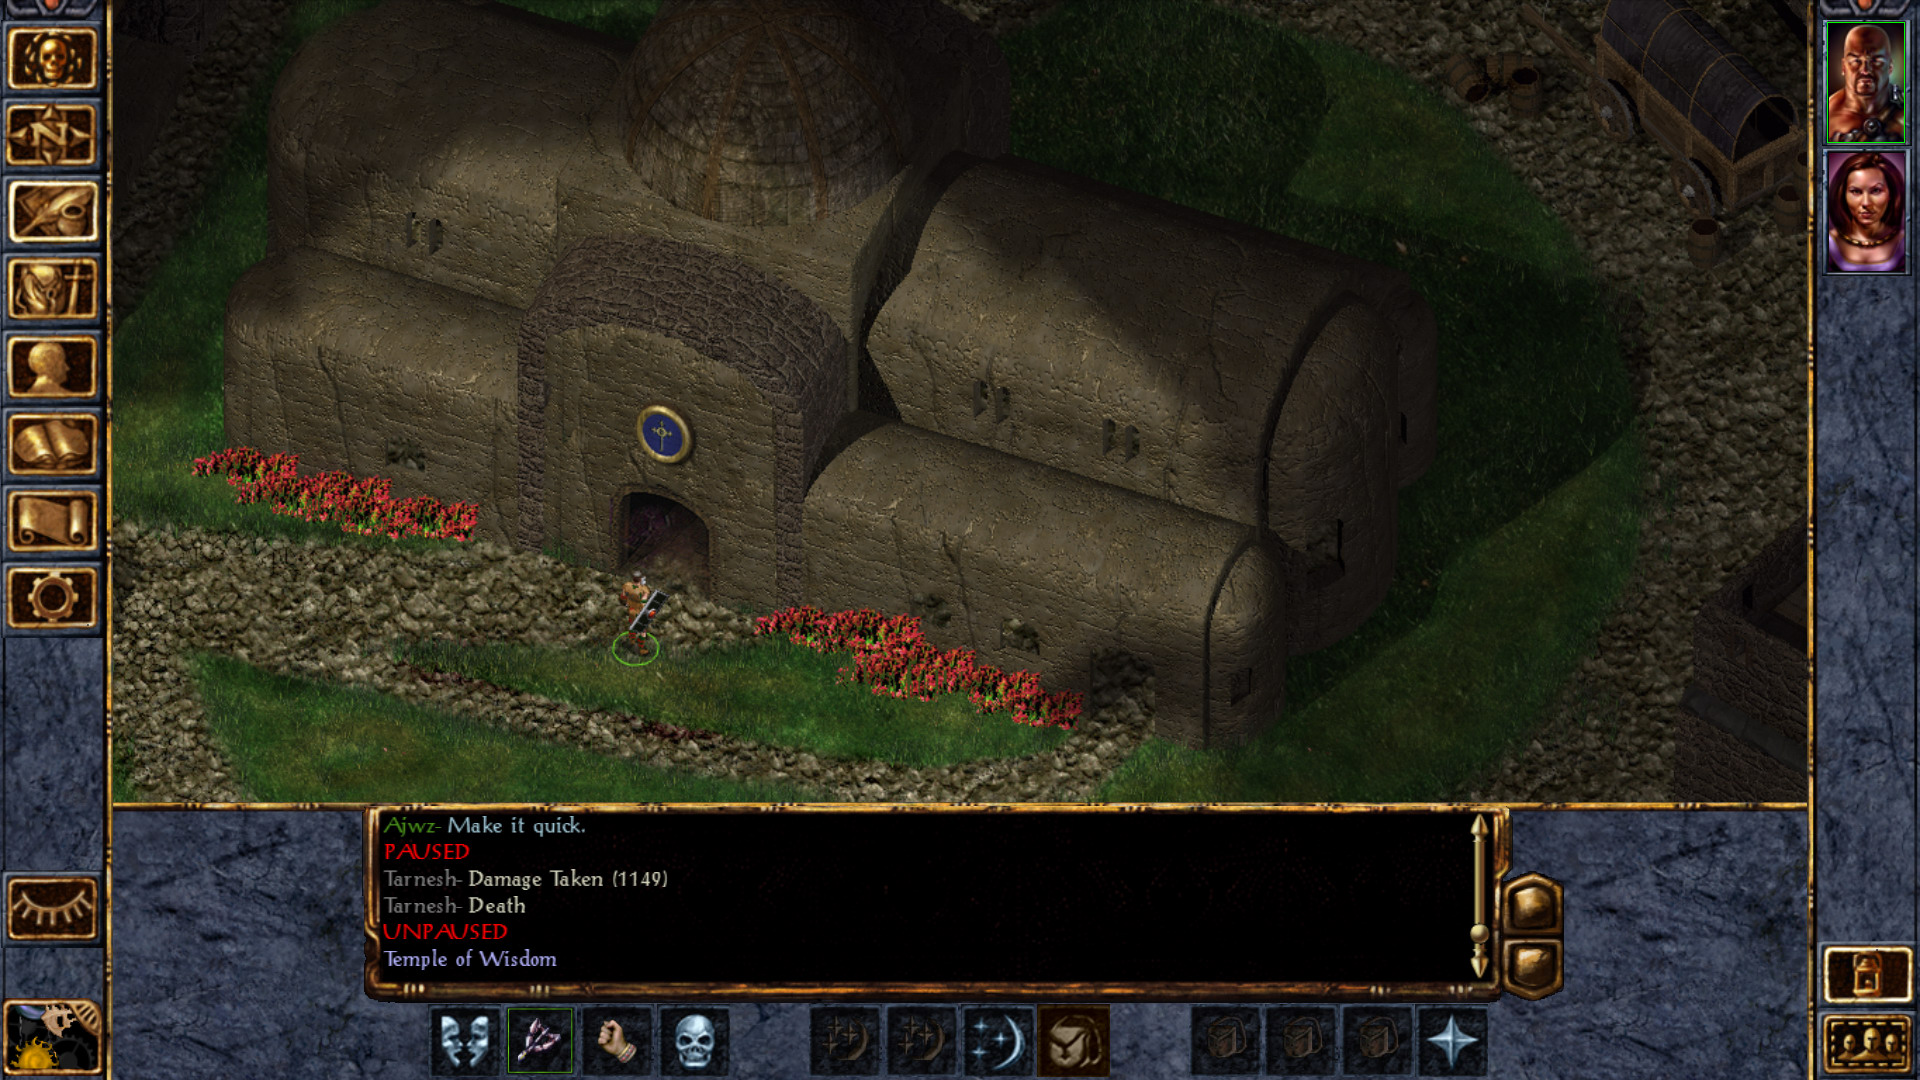 Baldurs gate похожие игры. Балдур Гейтс 1. Baldur's Gate 1 enhanced Edition. Скриншоты из игры Baldur's Gate 2. Baldur’s Gate 3 enhanced.